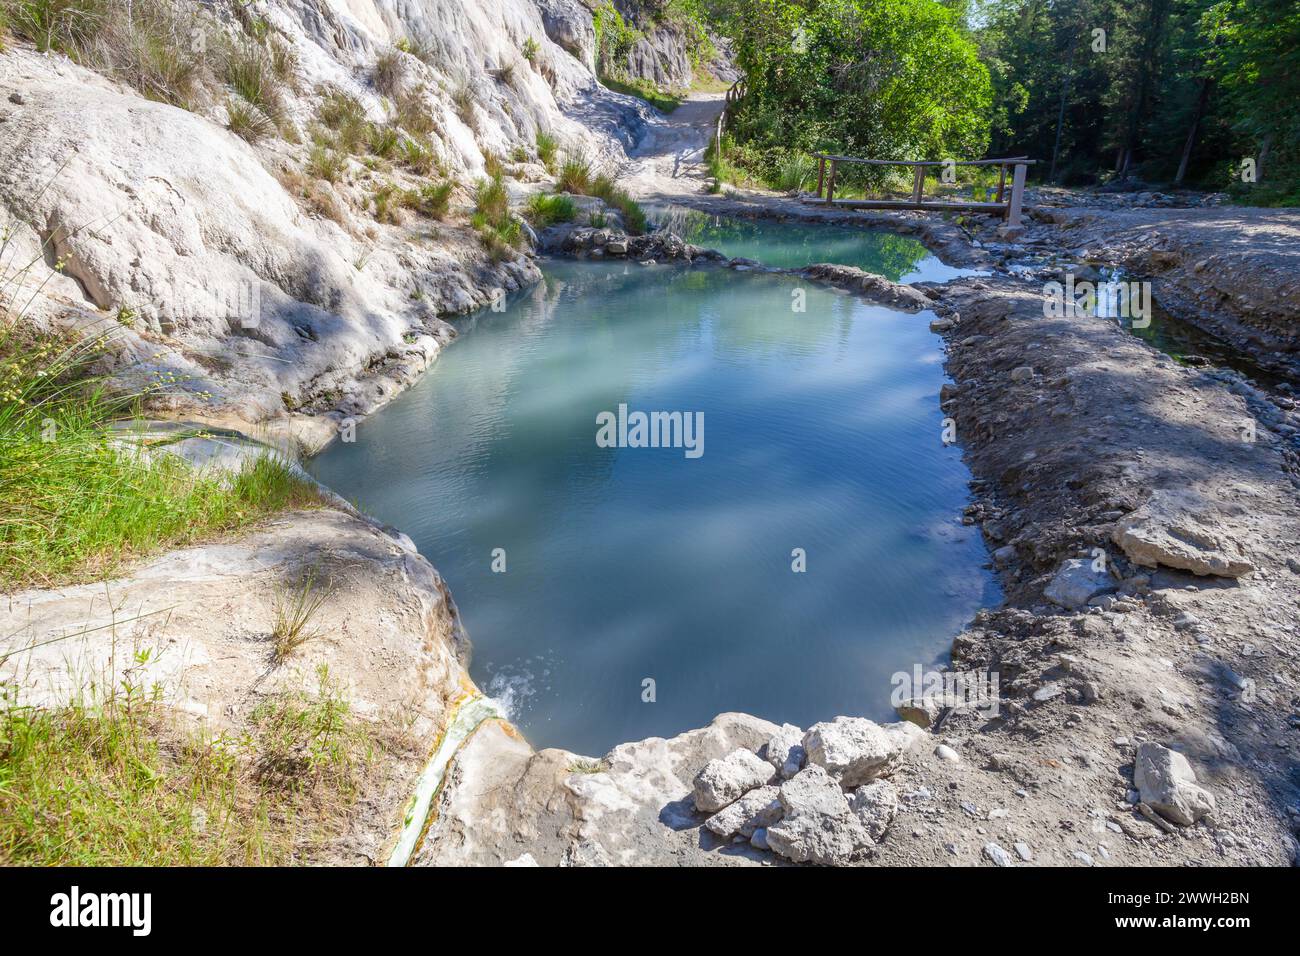 Piscina naturale bagni San Filippo con acqua turchese e rocce bianche in Toscana, Italia Foto Stock